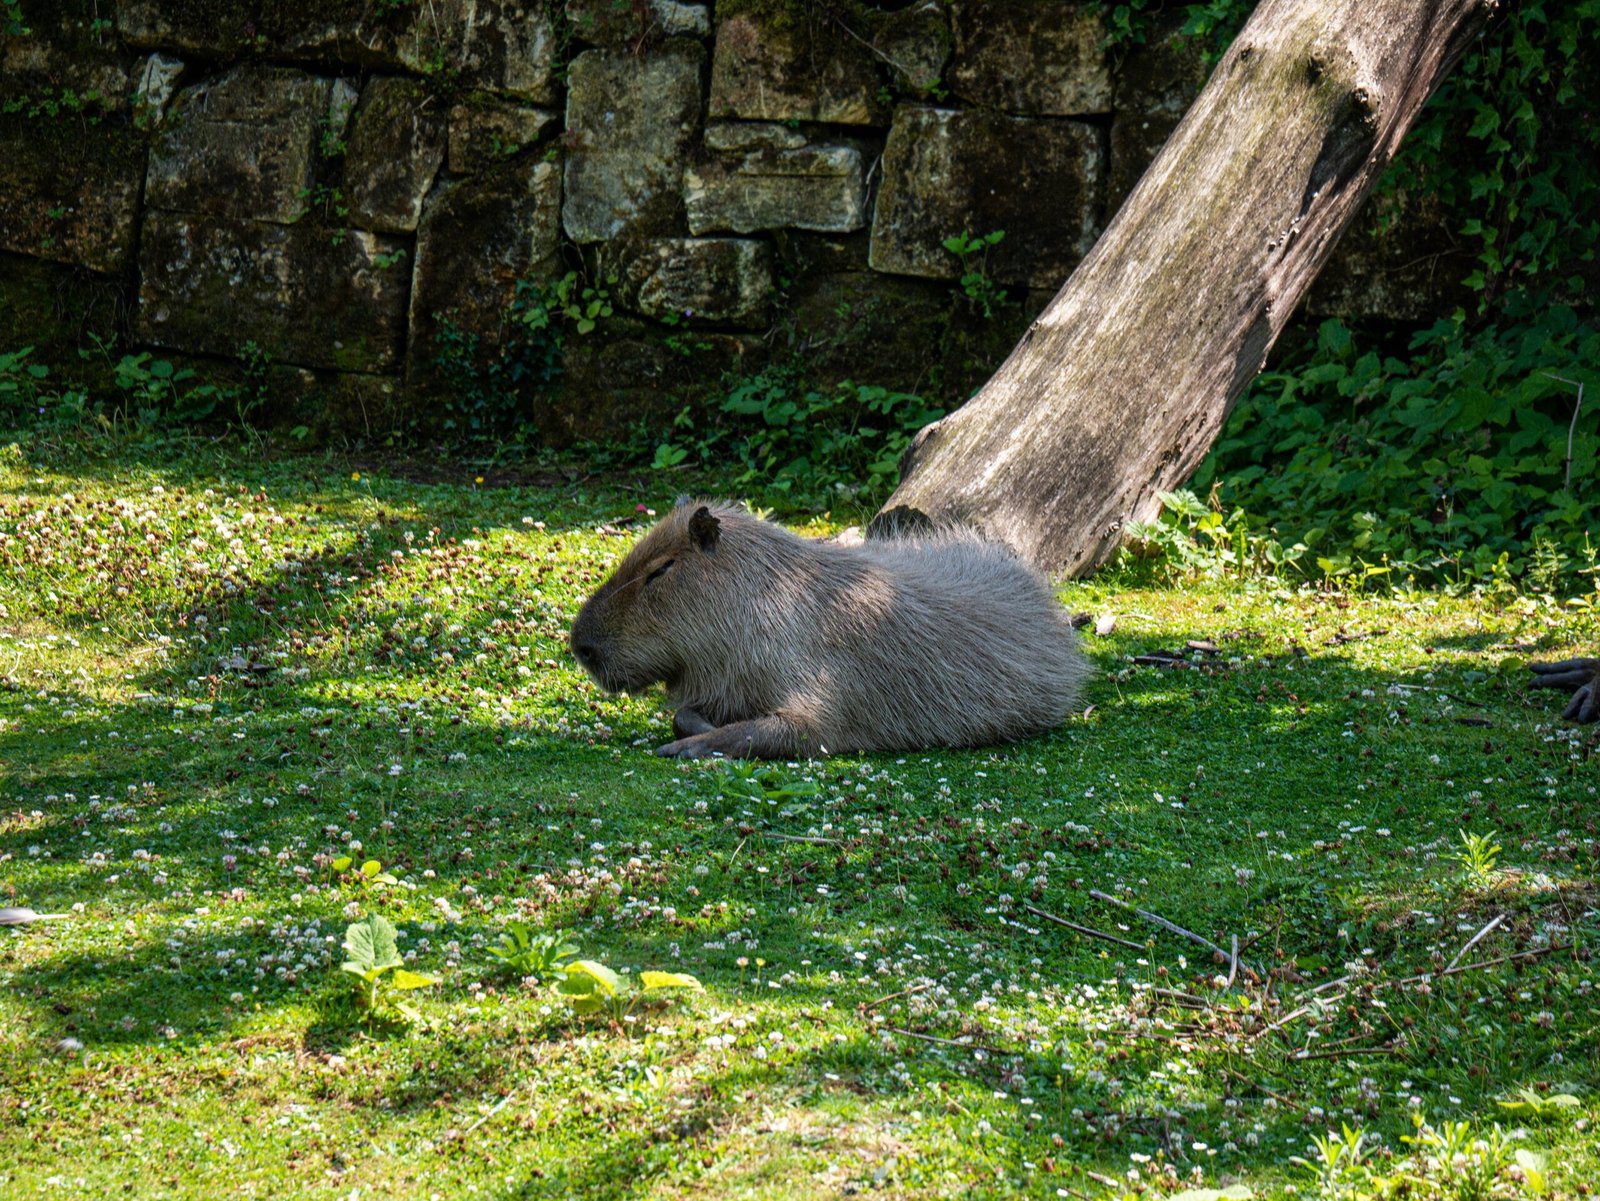 Sending Healing Vibes: Get Well Soon Capybara